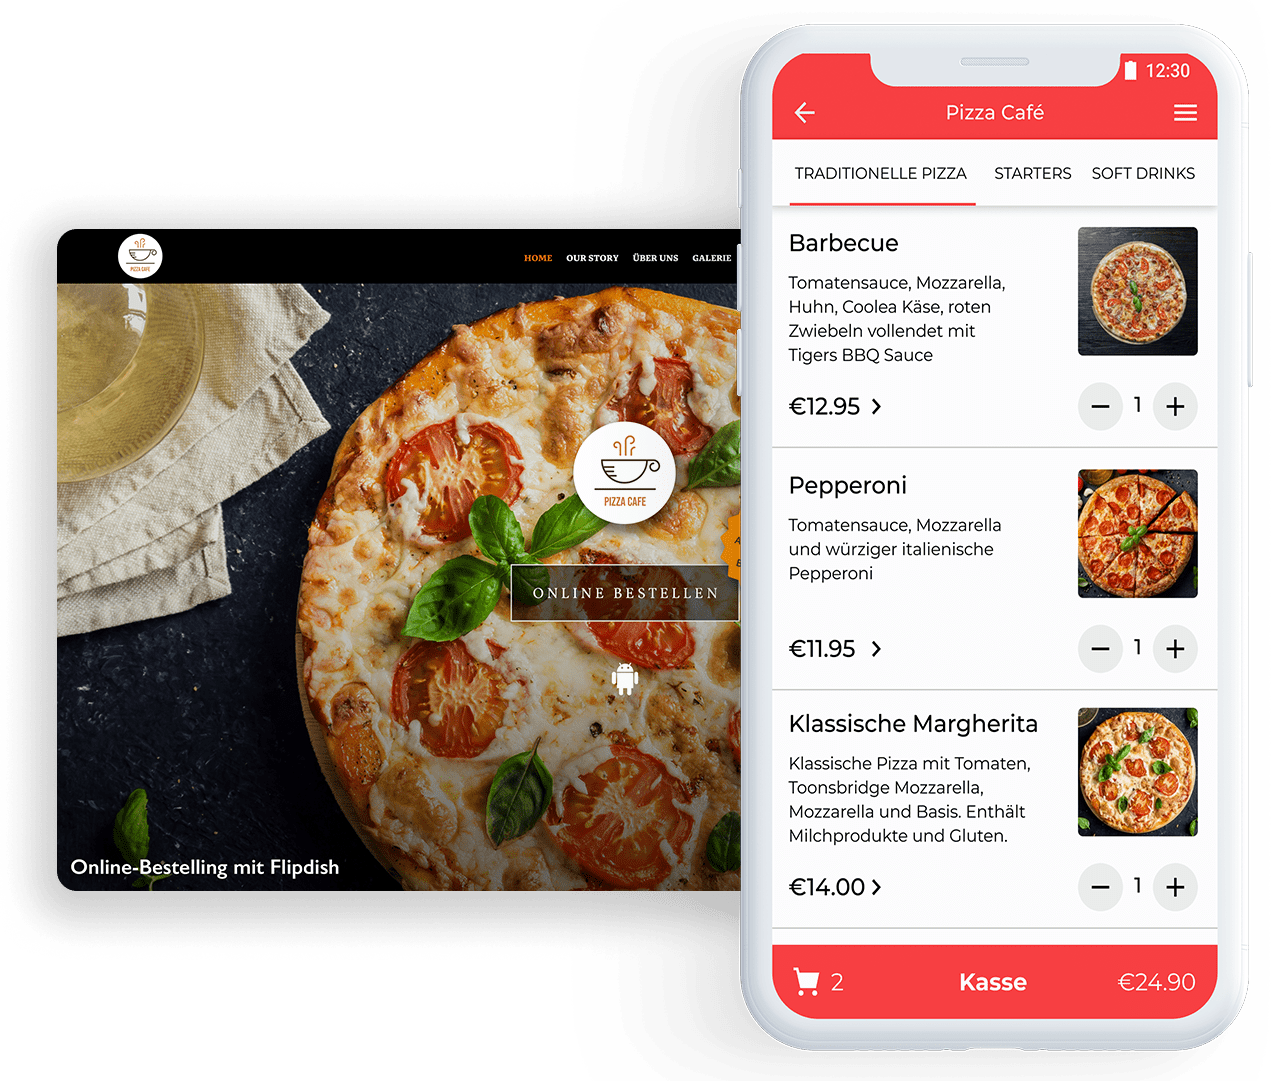 20201208 FD FD Product Pizza Cafe de app